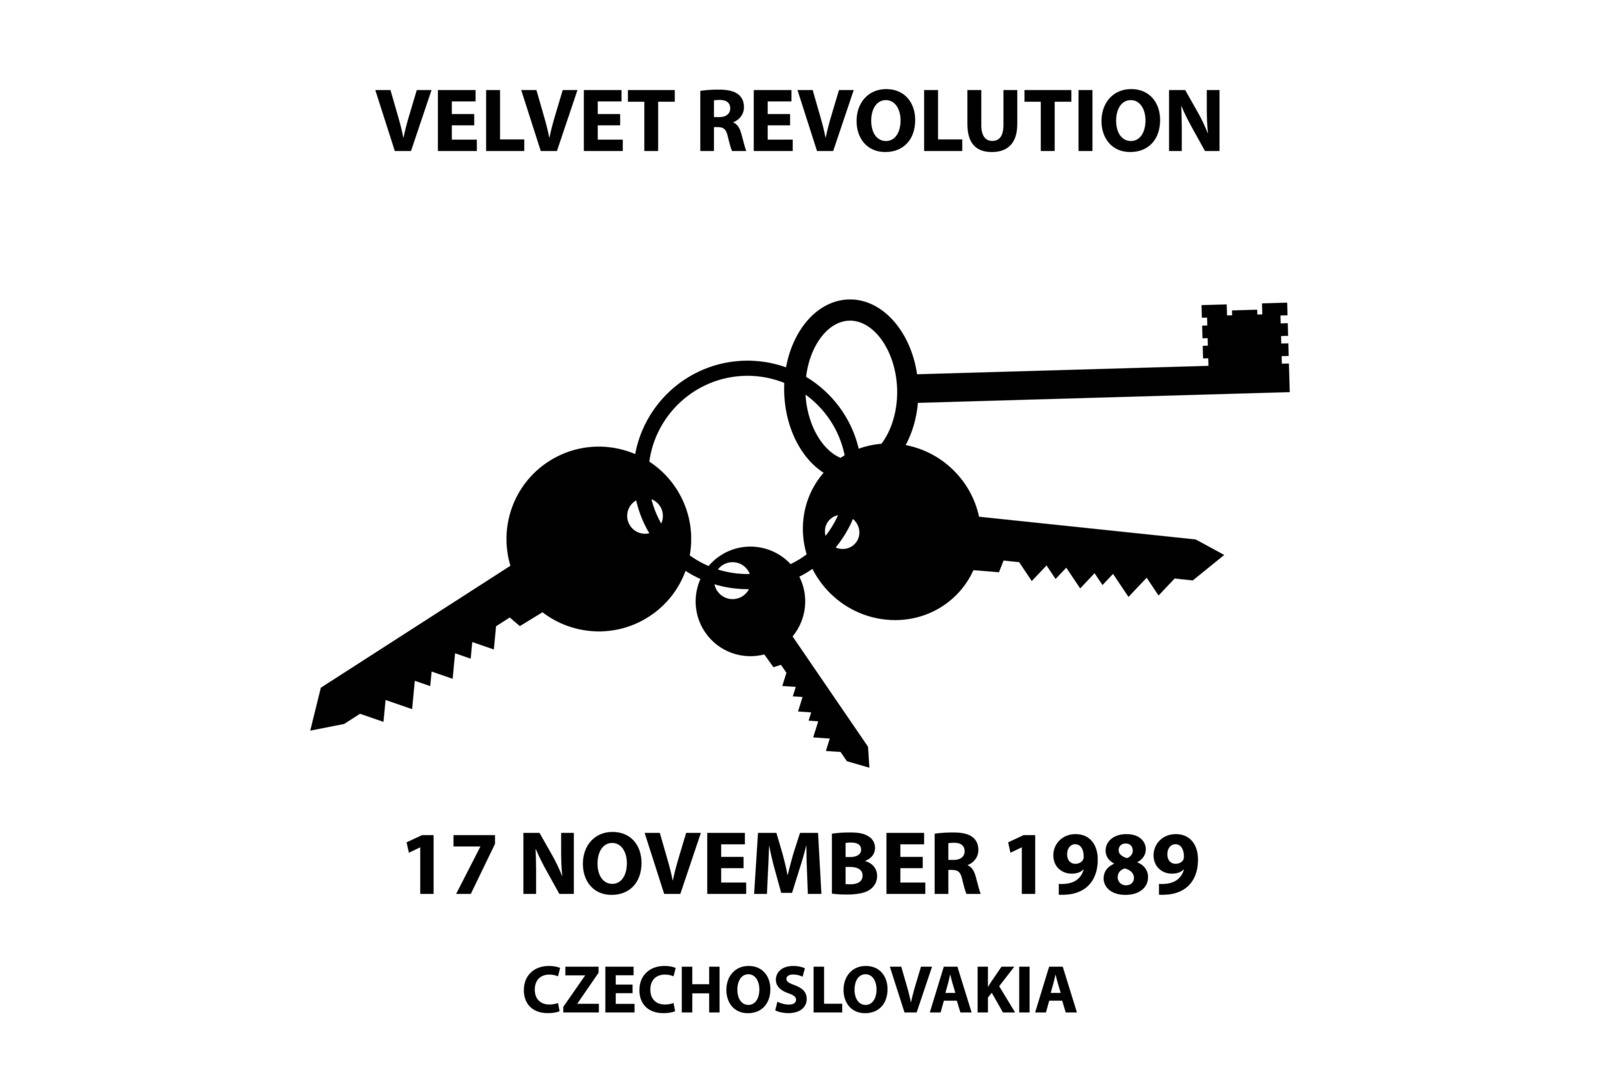 Clinking keys - velvet revolution symbol - 17 november 1989